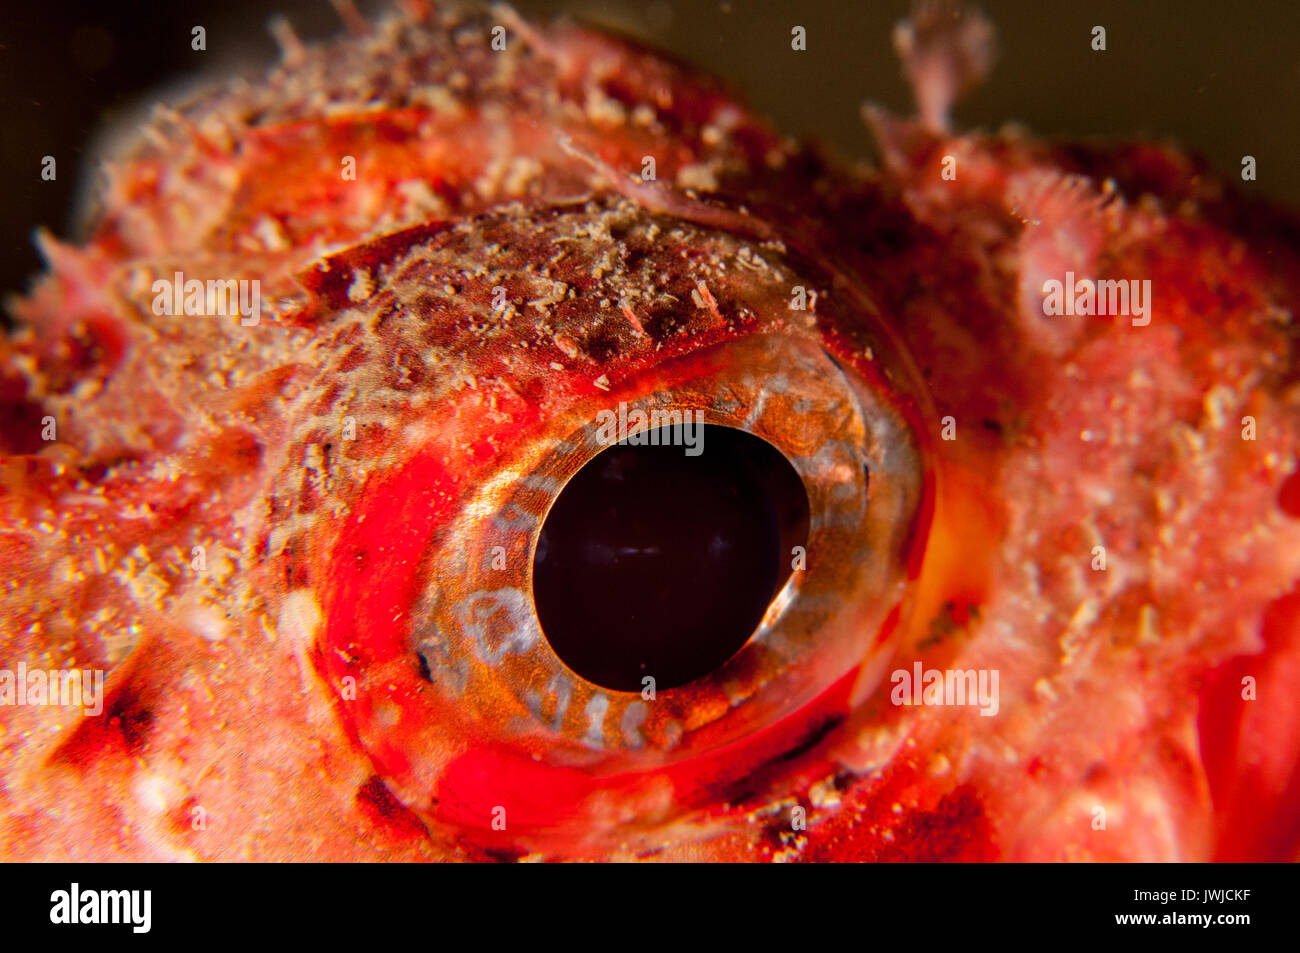 Nahaufnahme des Auges eines kleinen roten Skorpionfischs (Scorpaena notata), L'escala, Costa Brava, Katalonien, Spanien Stockfoto